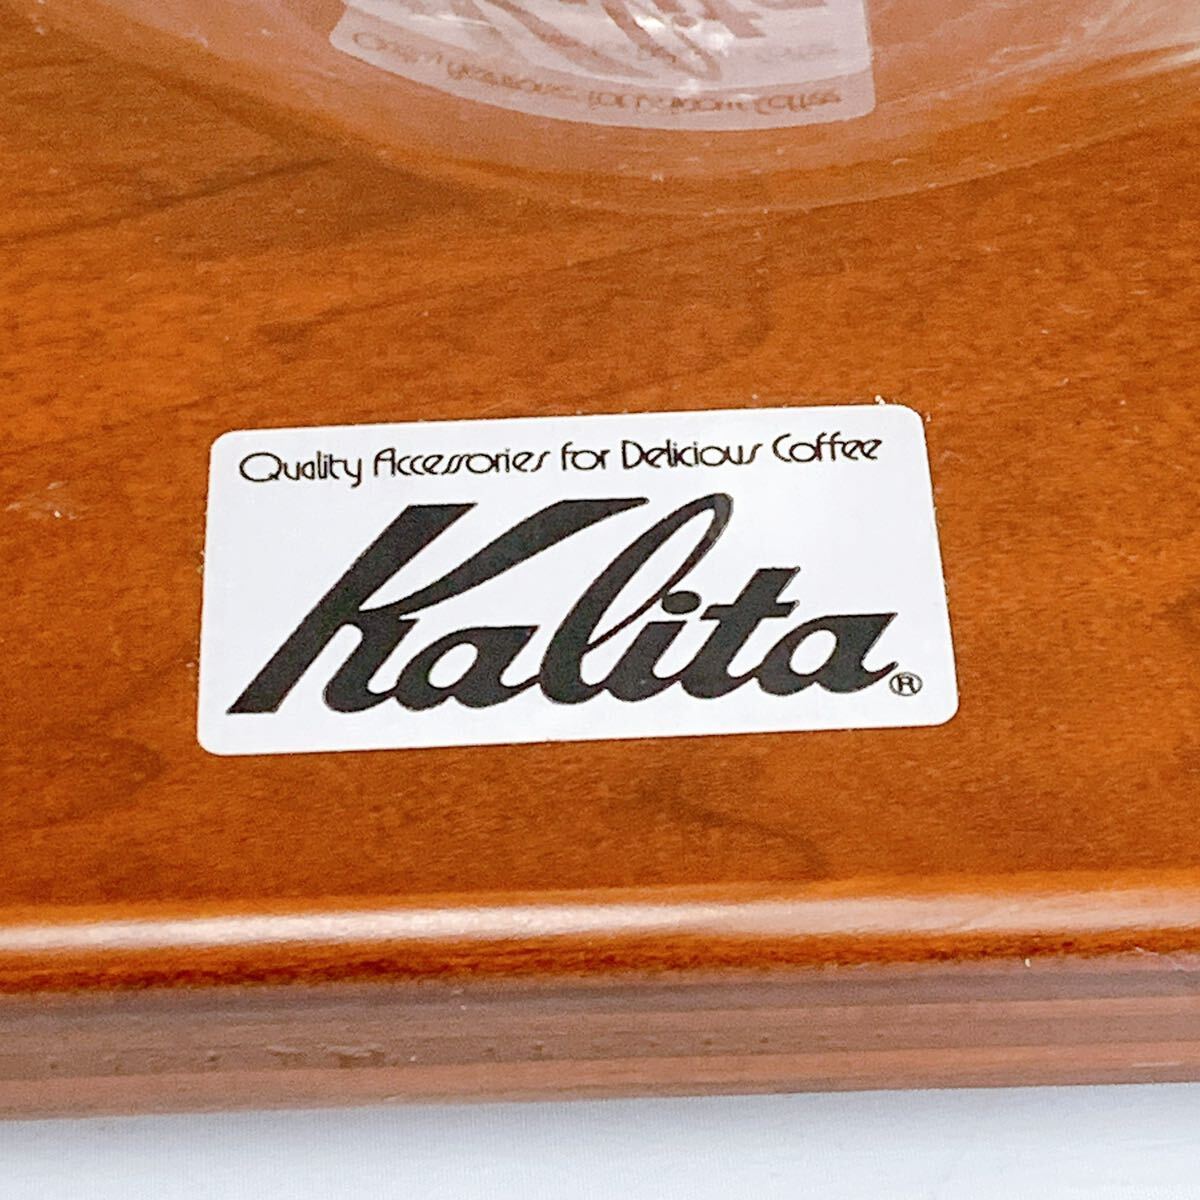 4SB046 Kalita Carita вода .. кофе Dodge кофе кофе прибор кофе экстракт контейнер для бизнеса античный Cafe б/у текущее состояние товар работоспособность не проверялась 